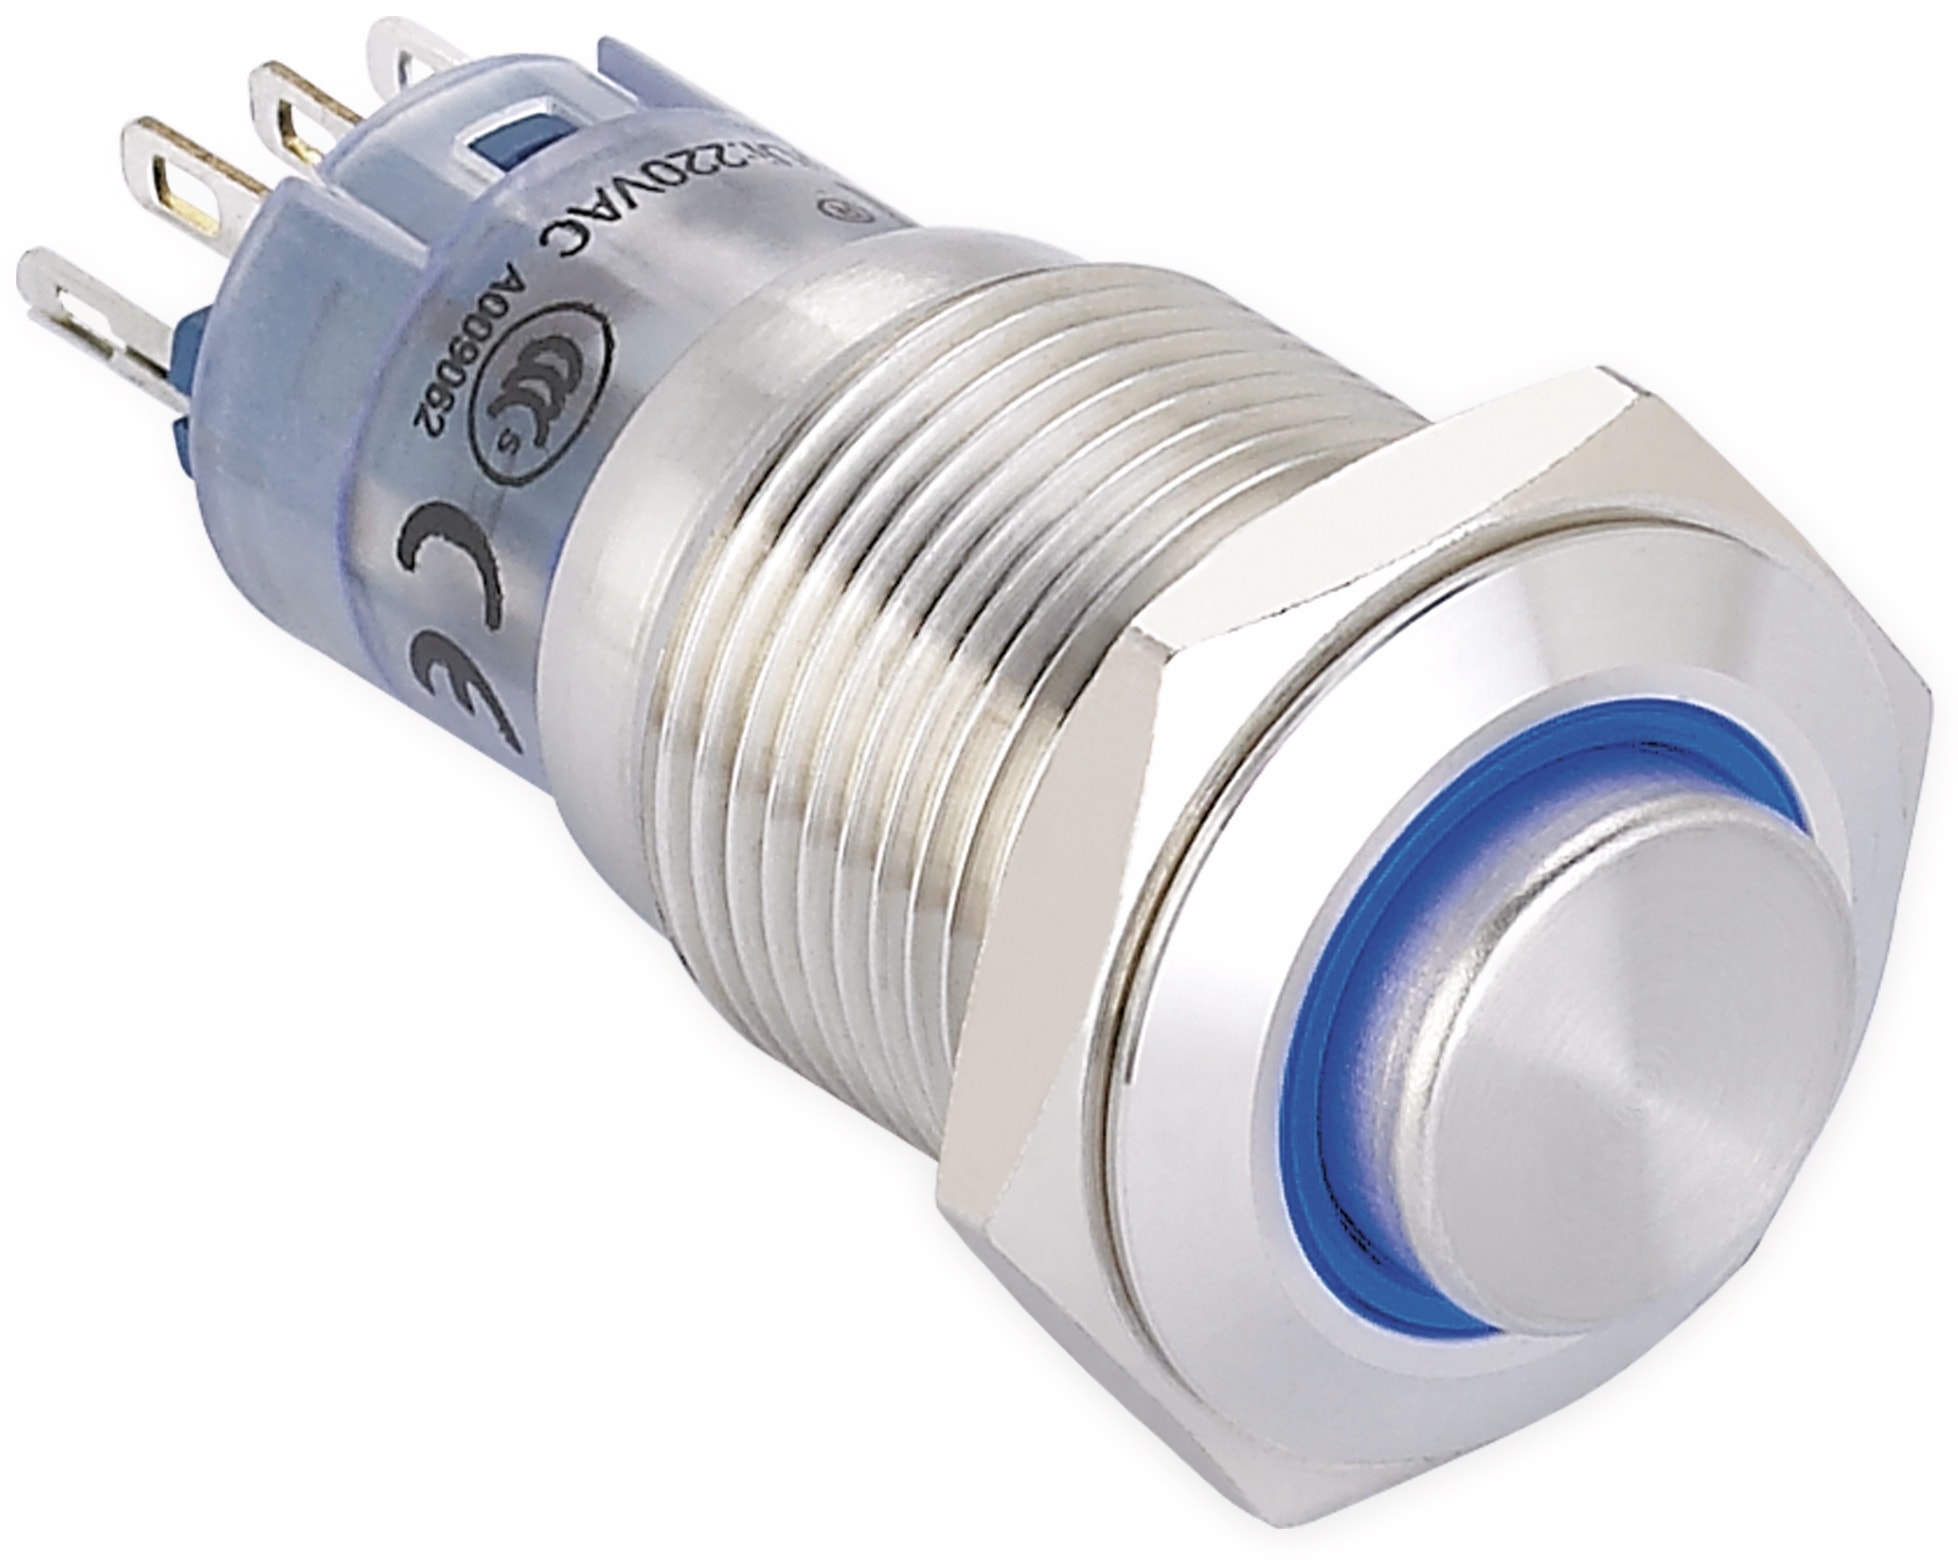 ONPOW Schalter, 24 V/DC, 1x Off/On, Beleuchtung weiß, Lötanschluss, erhaben rund, Edelstahl, 16 mm